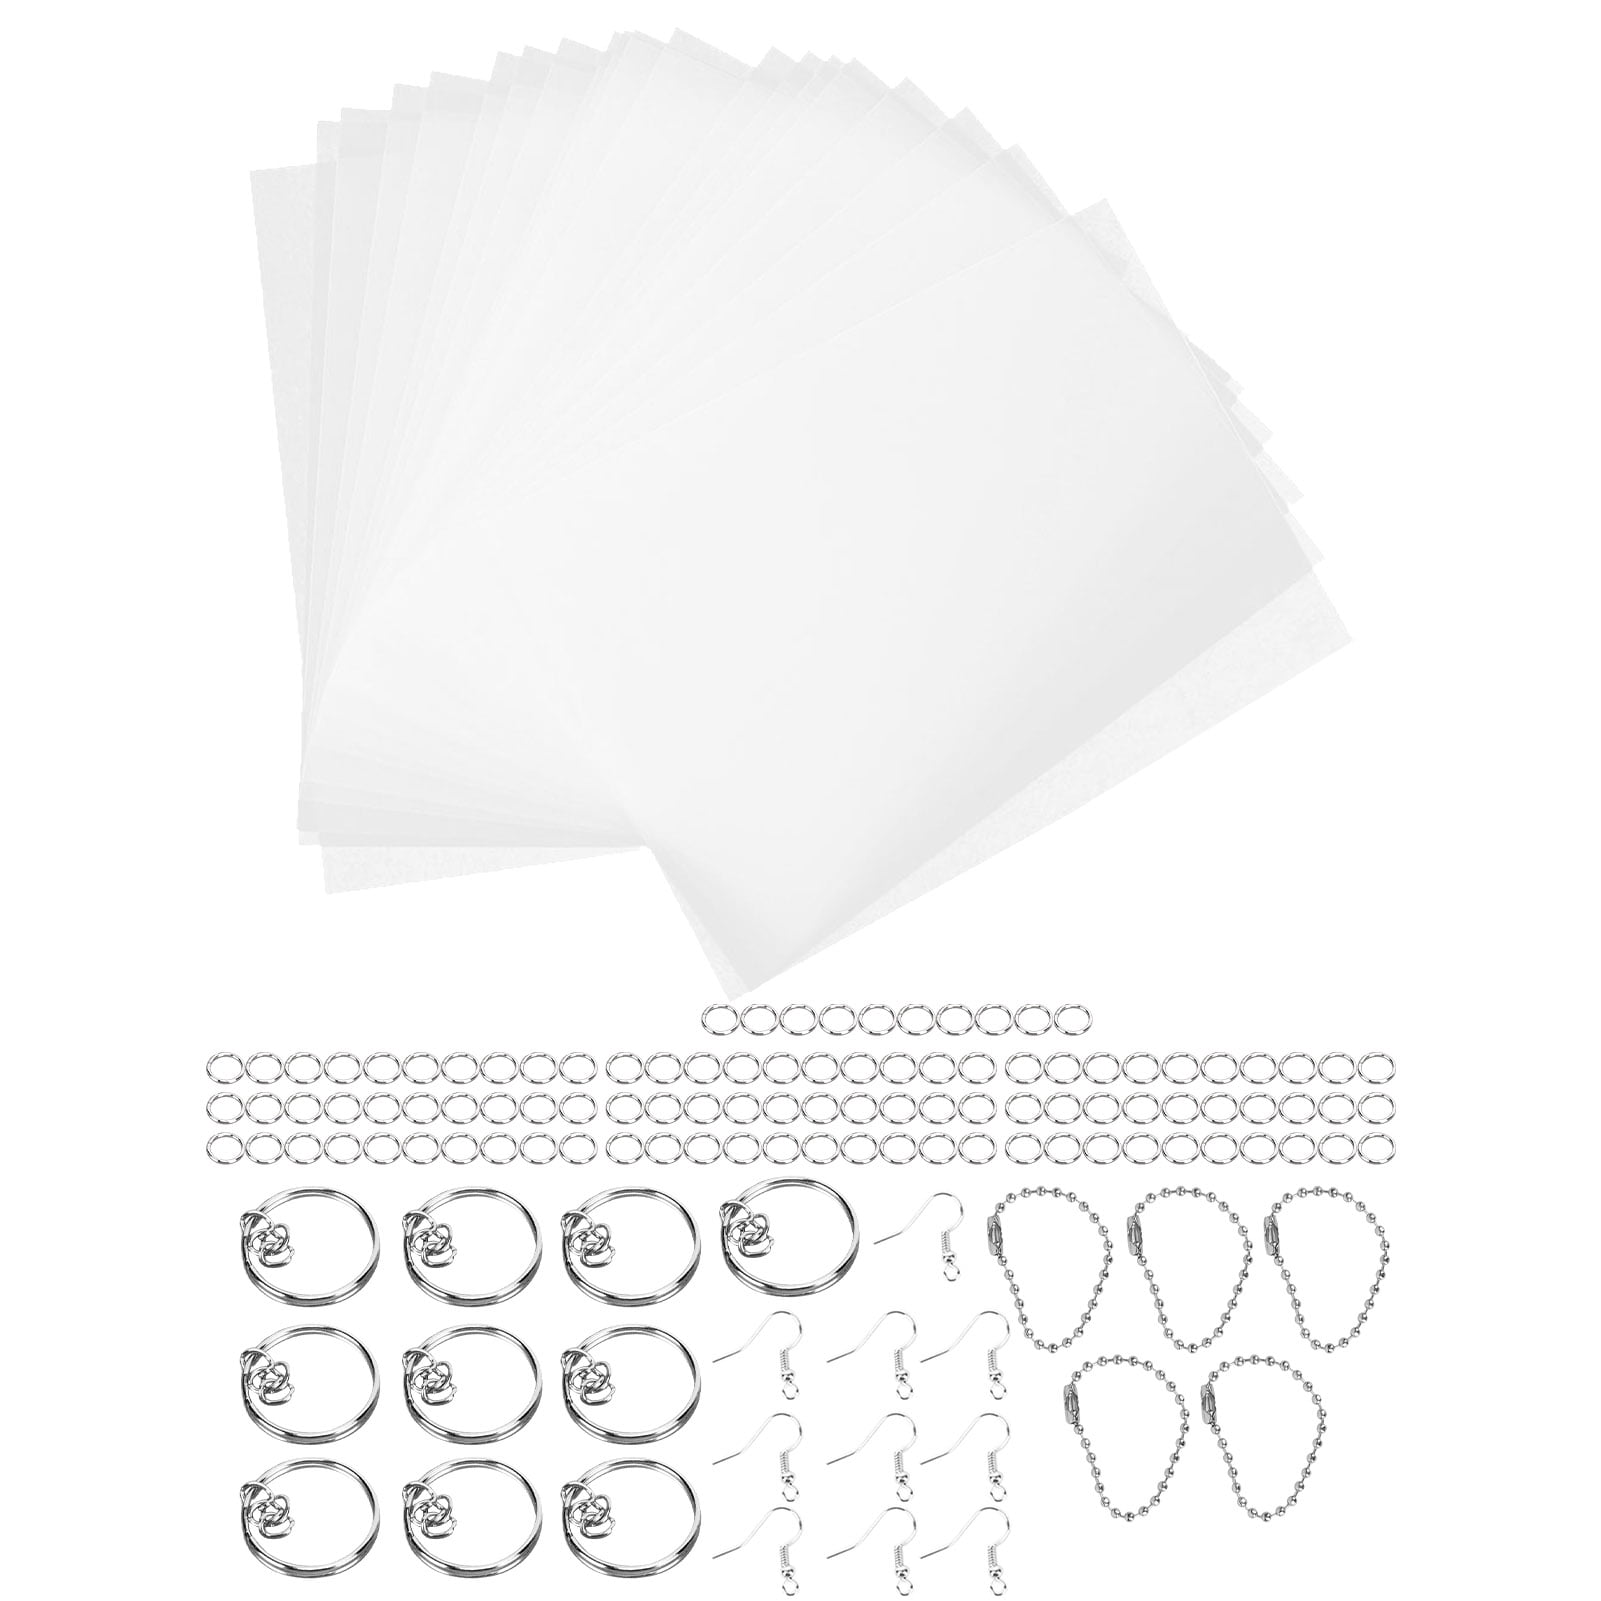 SZSXHWJK Shrinky Dink Sheets Kit 164pcs Heat Shrink Plastic Paper